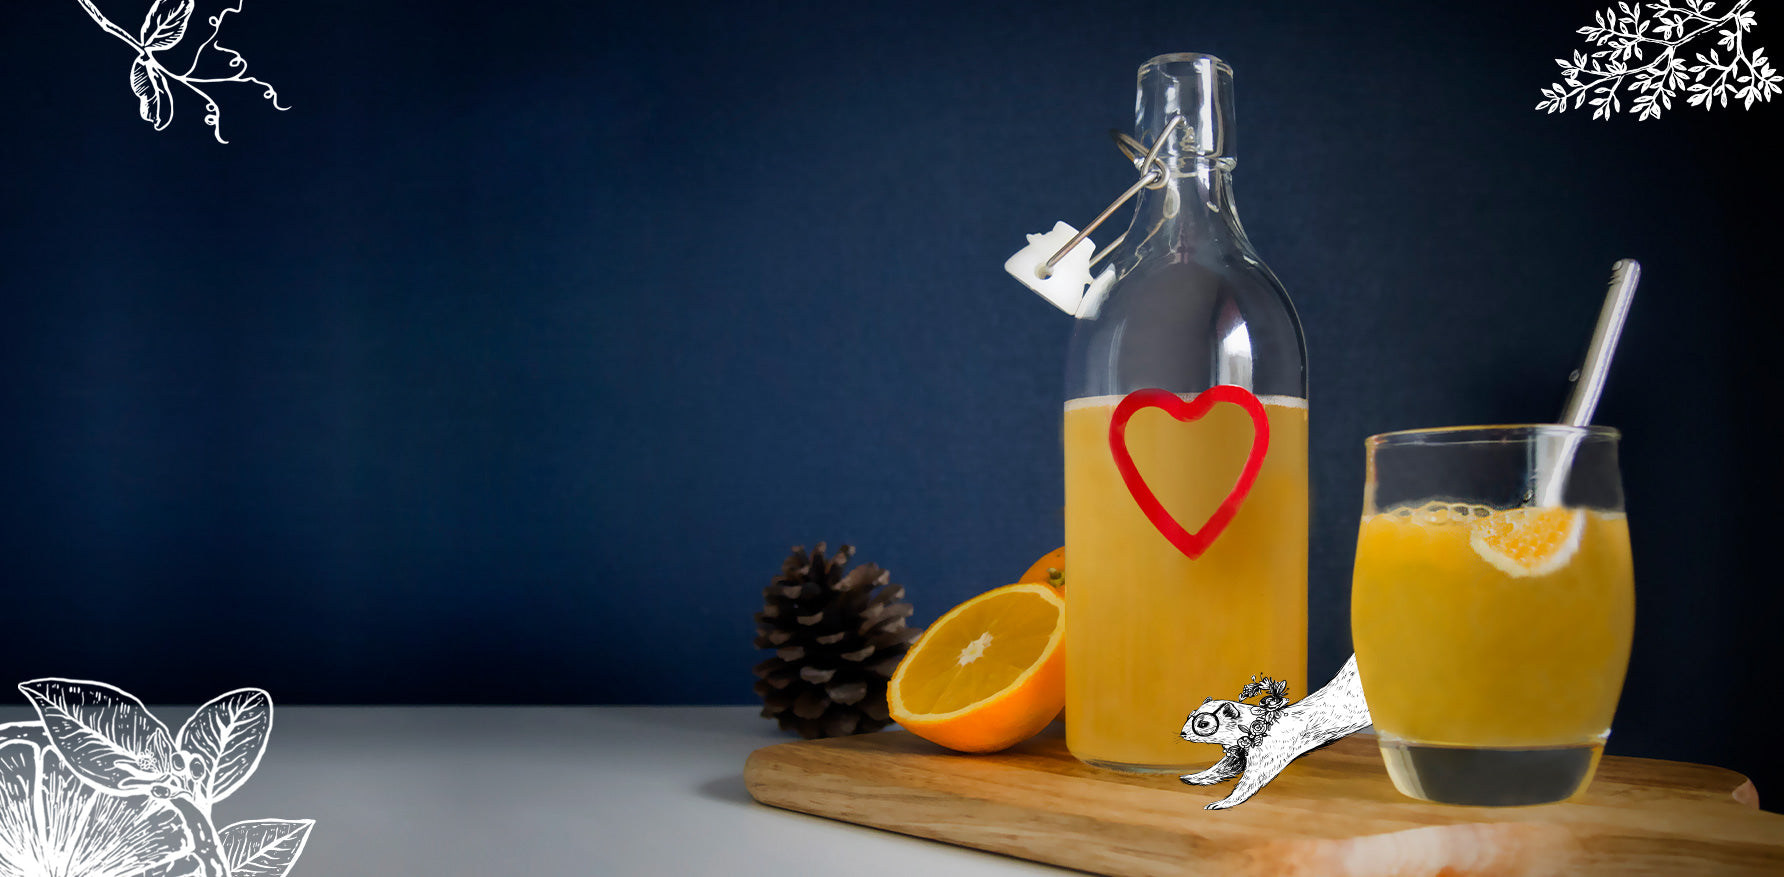 Homemade probiotics: how to make orange kefir?